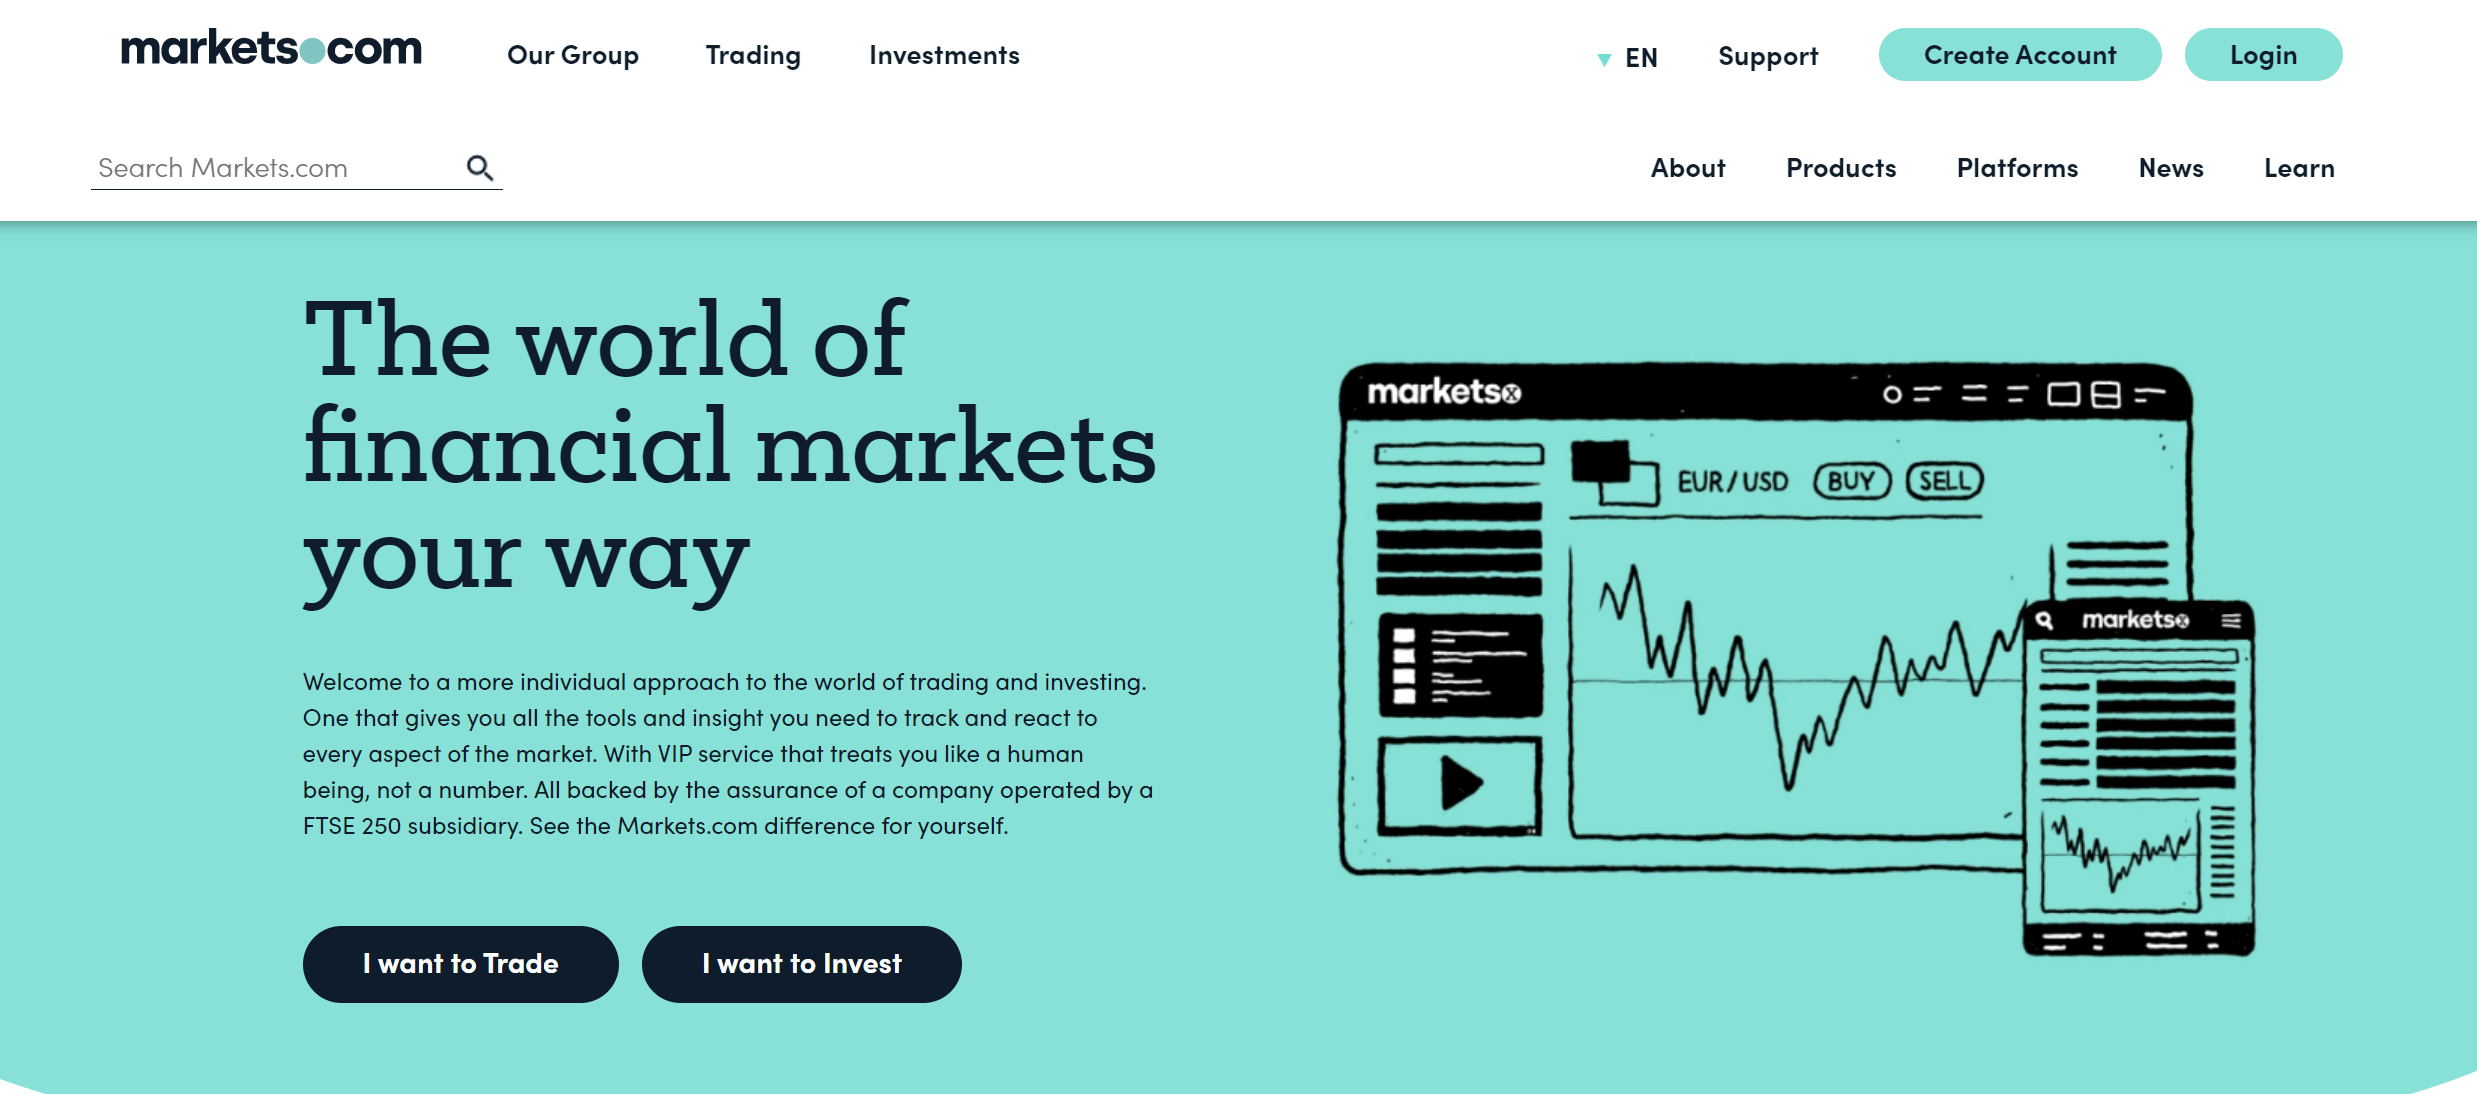 Markets.com आधिकारिक वेबसाइट